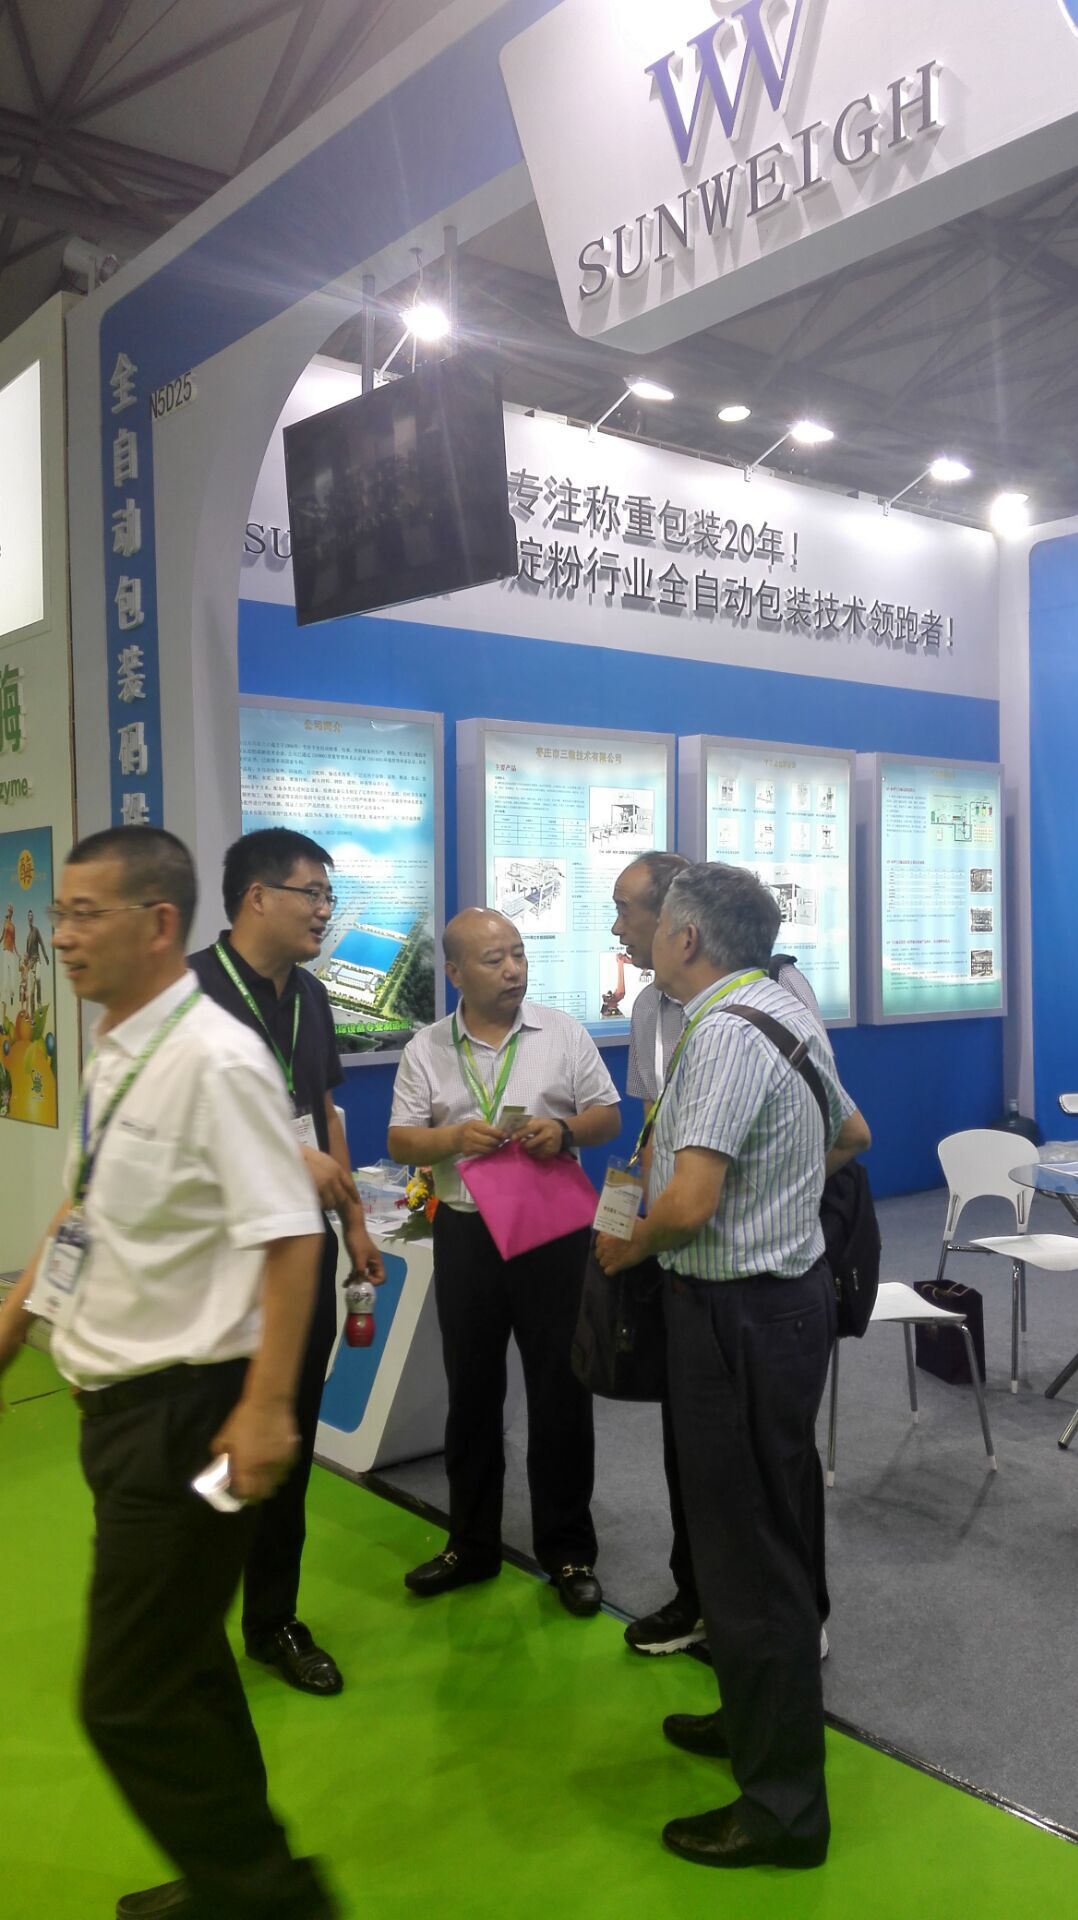 热烈庆祝枣庄市三维技术有限公司参加上海世界淀粉展取得圆满成功